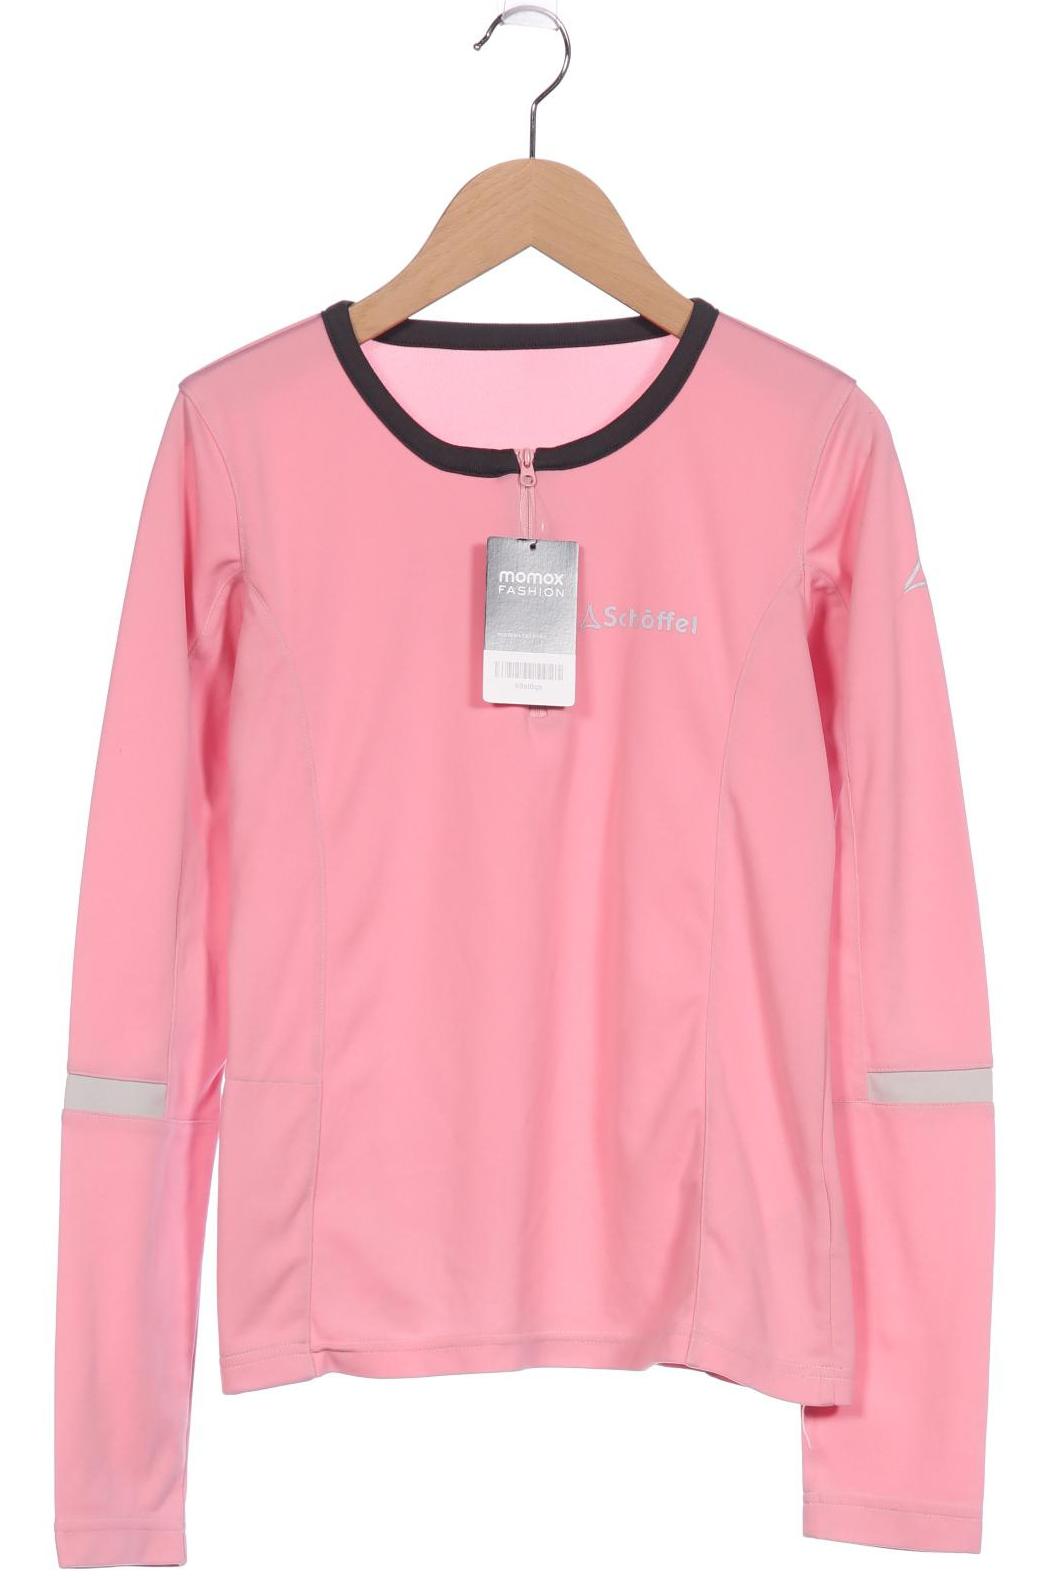 Schöffel Damen Sweatshirt, pink von Schöffel